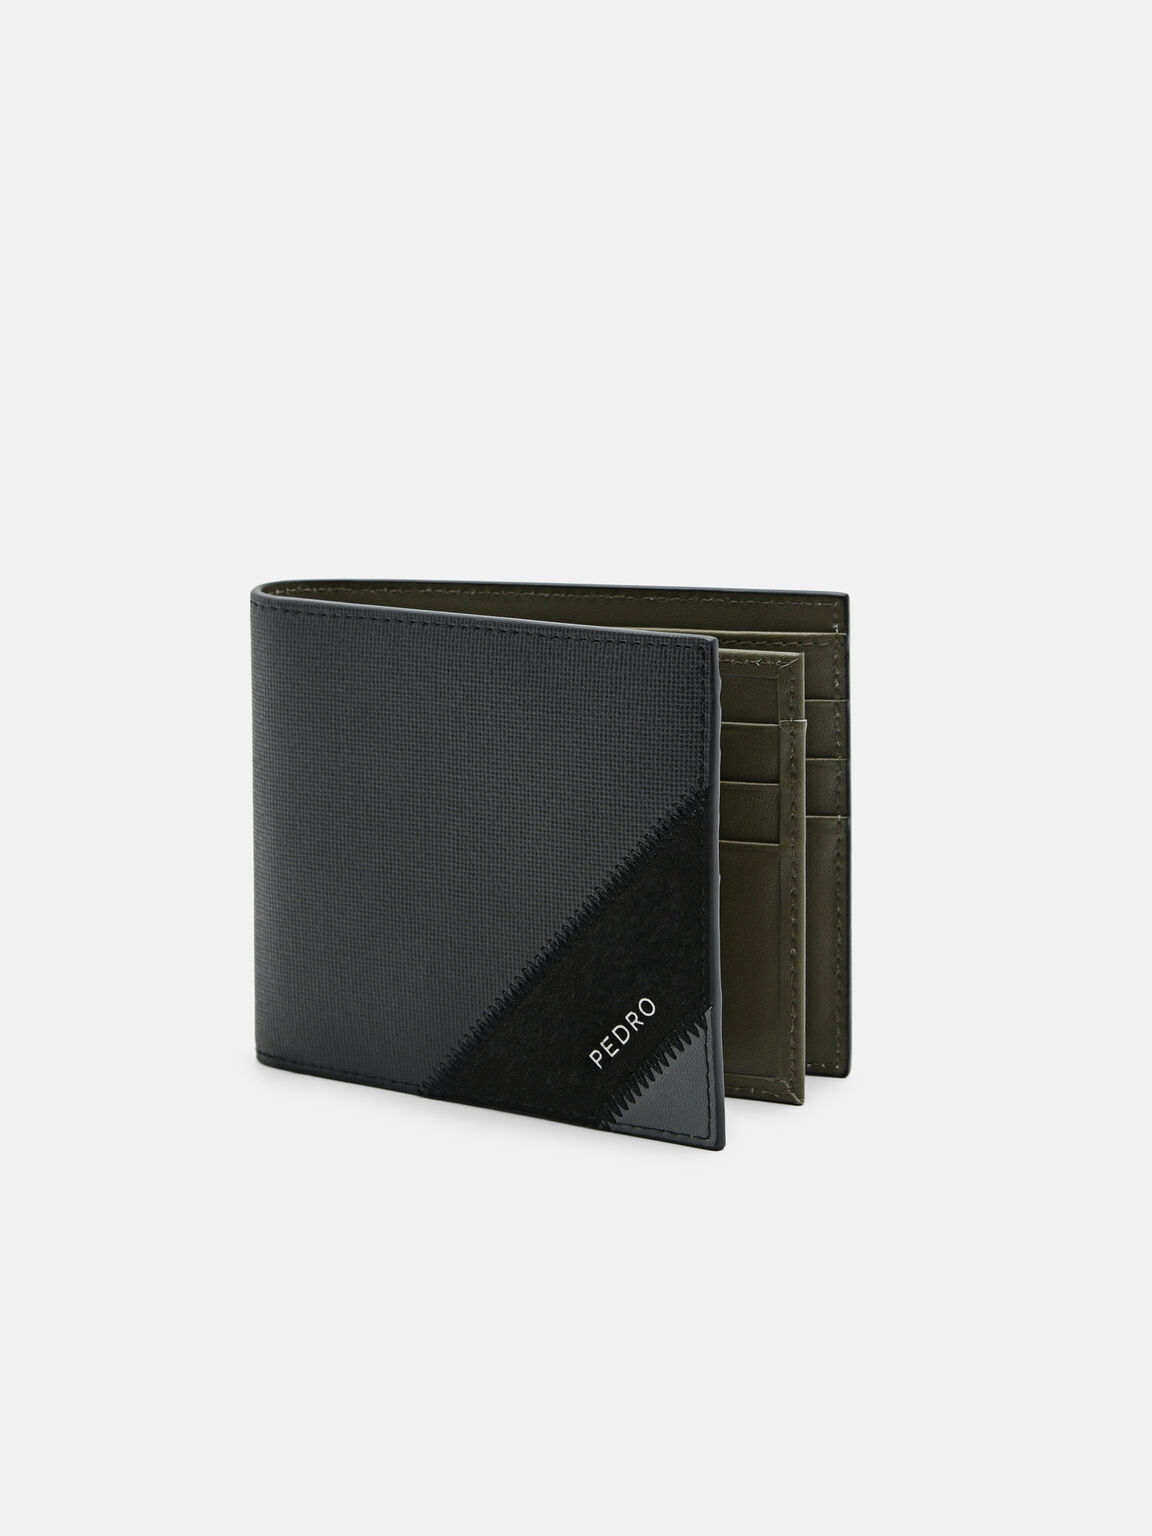 Leather Bi-Fold Flip Wallet, Black, hi-res